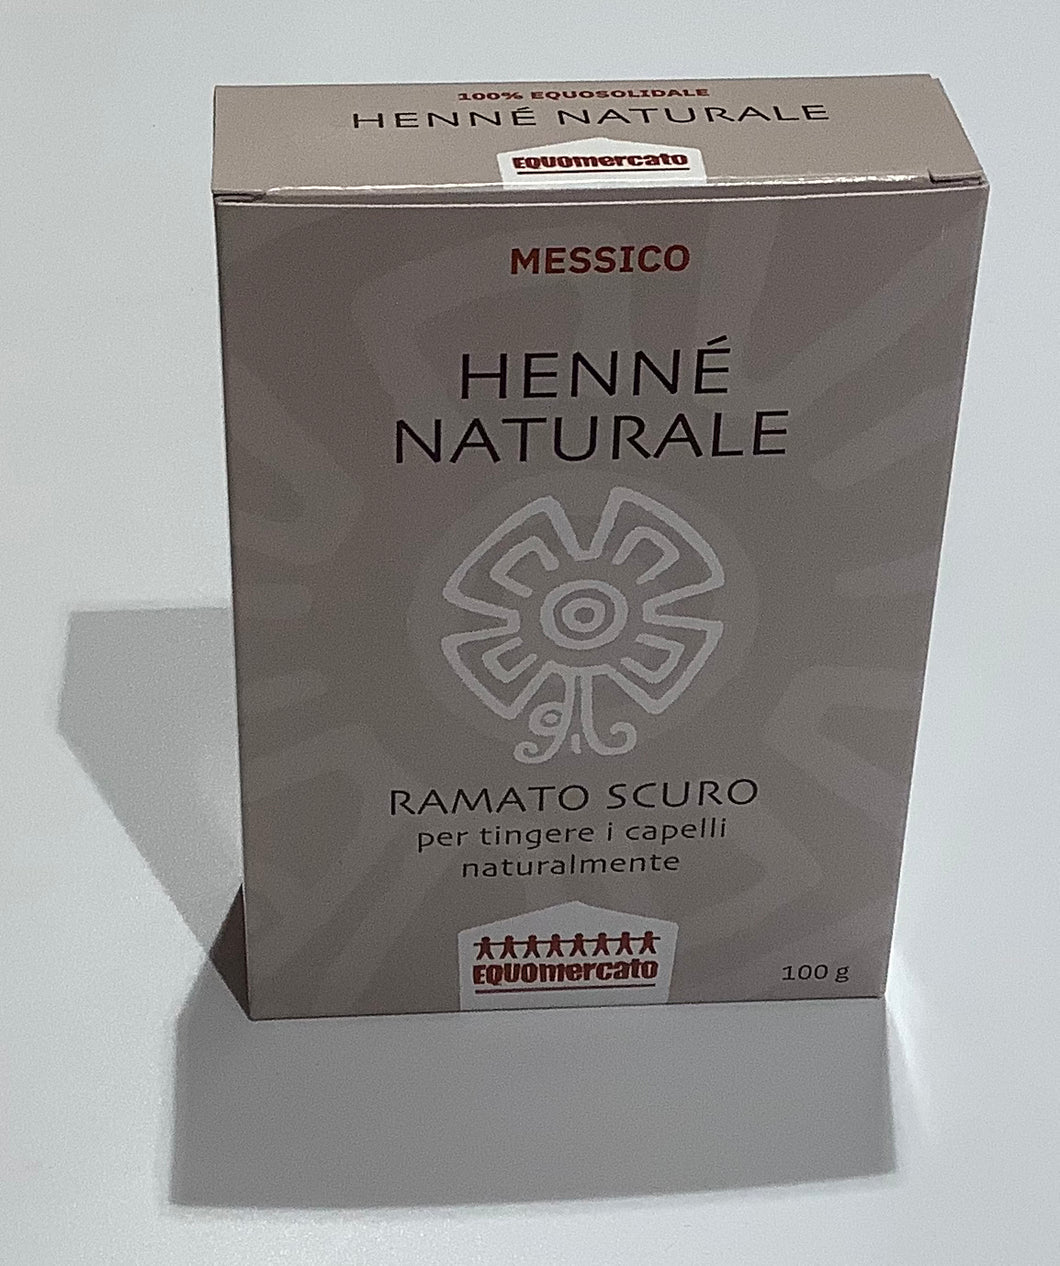 HENNE' NATURALE RAMATO SCURO 100g